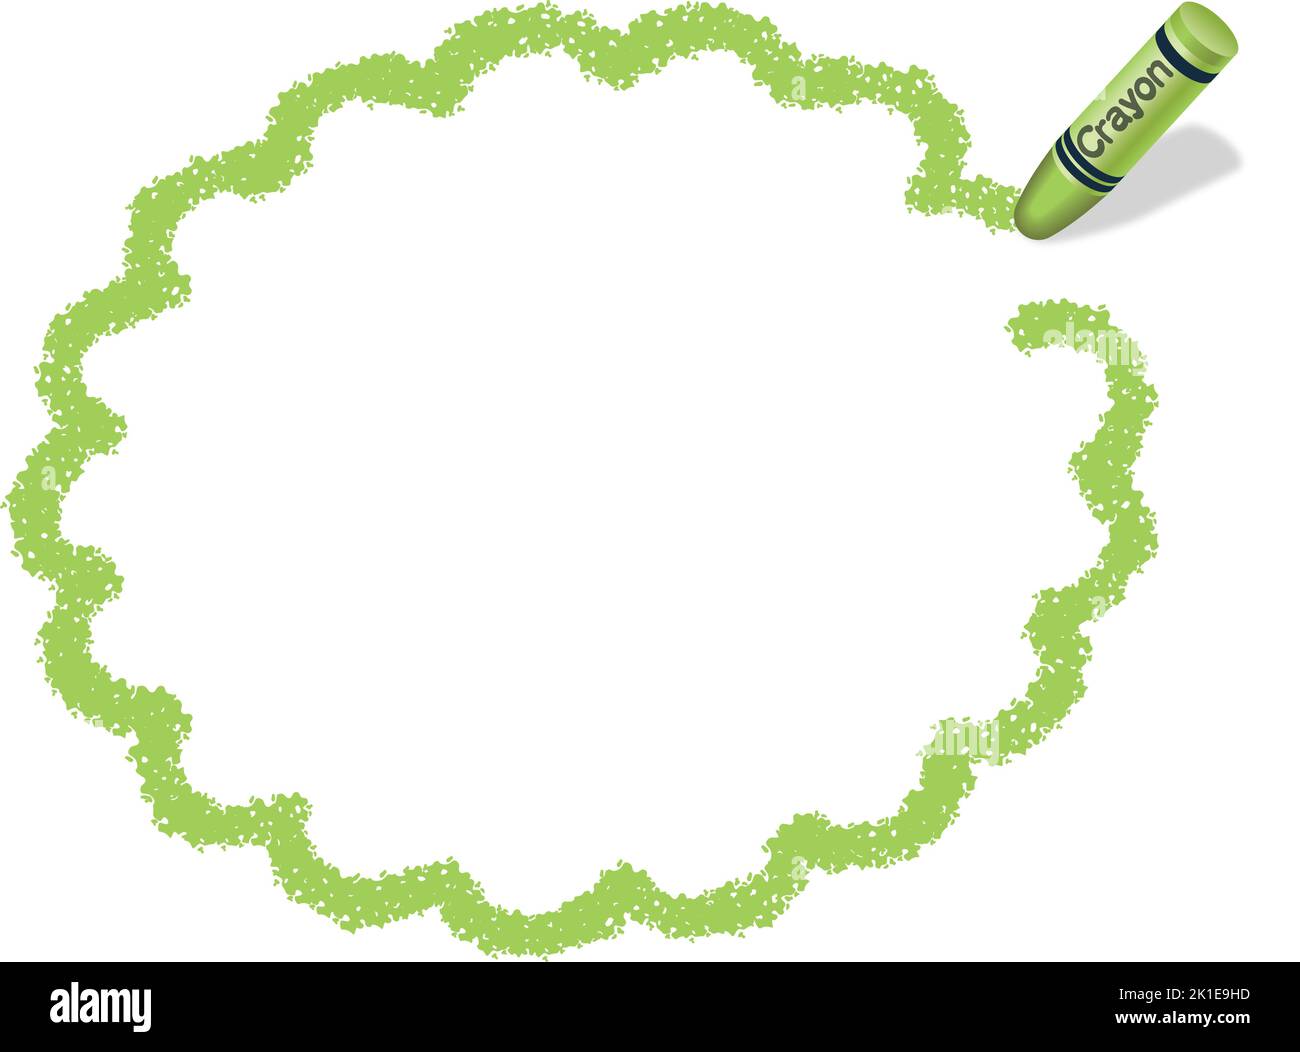 Vektor handgezeichneter grüner Blumenkreis Crayon Textur Rahmen isoliert auf Weißem Hintergrund. Stock Vektor